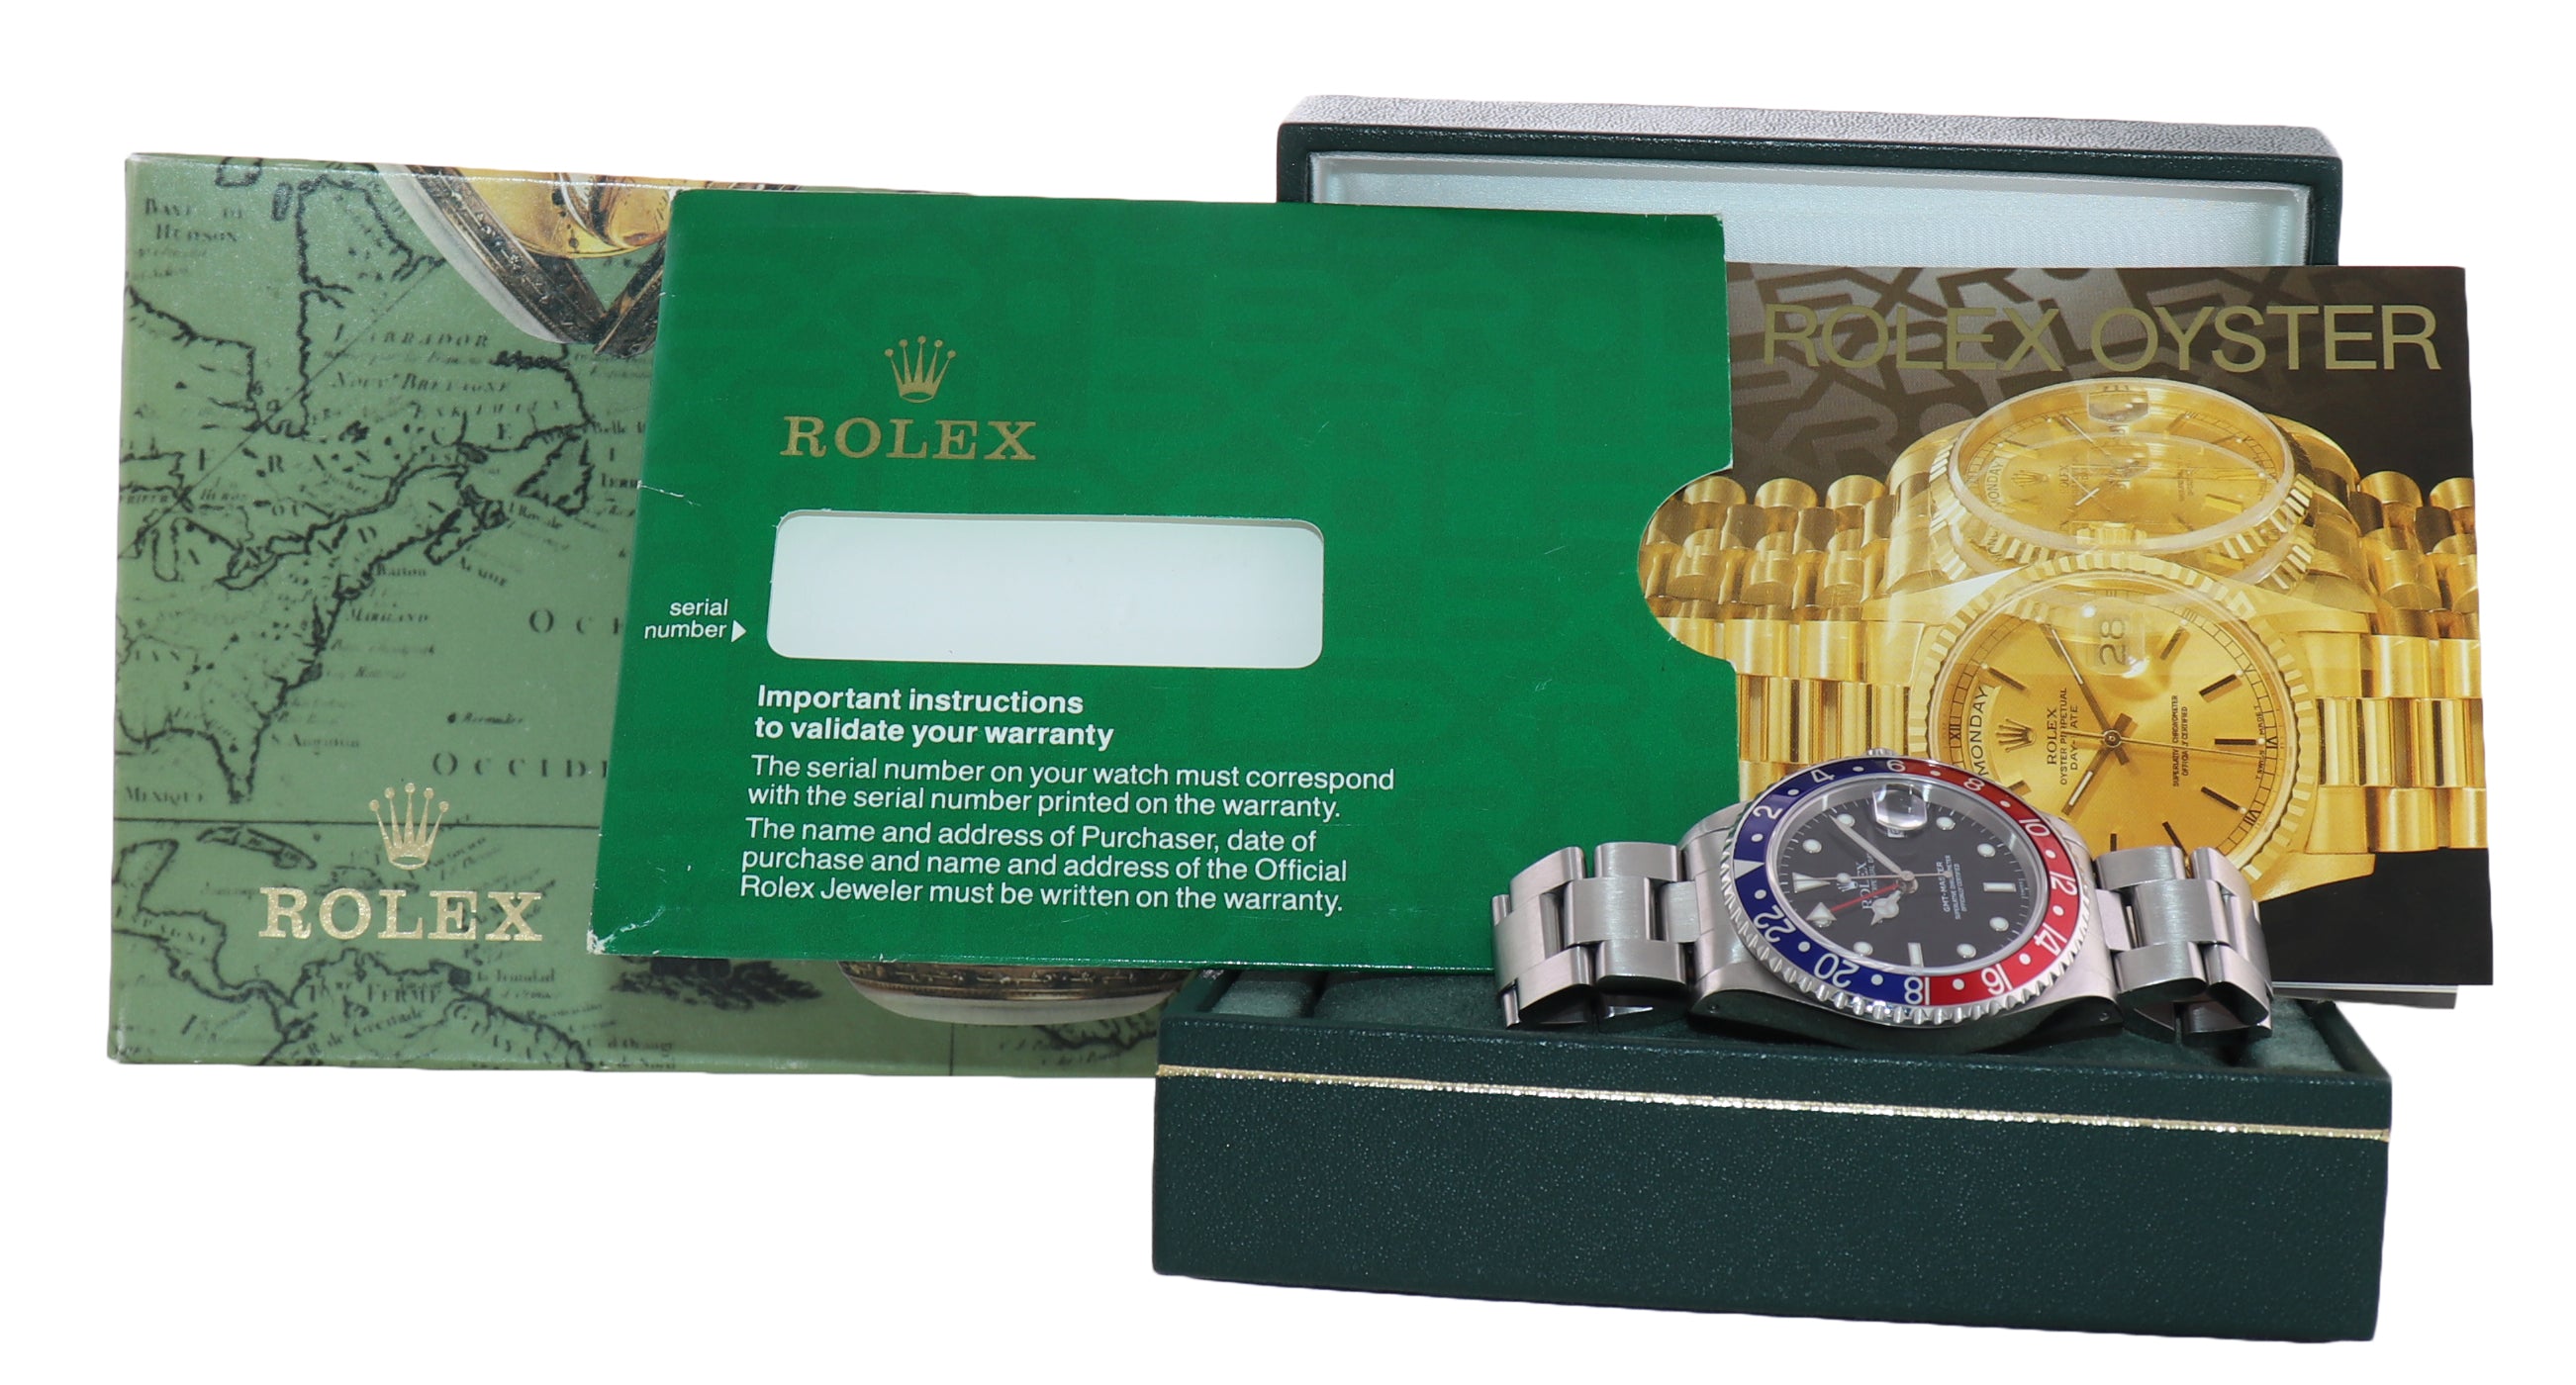 1998 Rolex GMT-Master Tritium Pepsi Blue Red Steel 16700 Watch Oyster Box